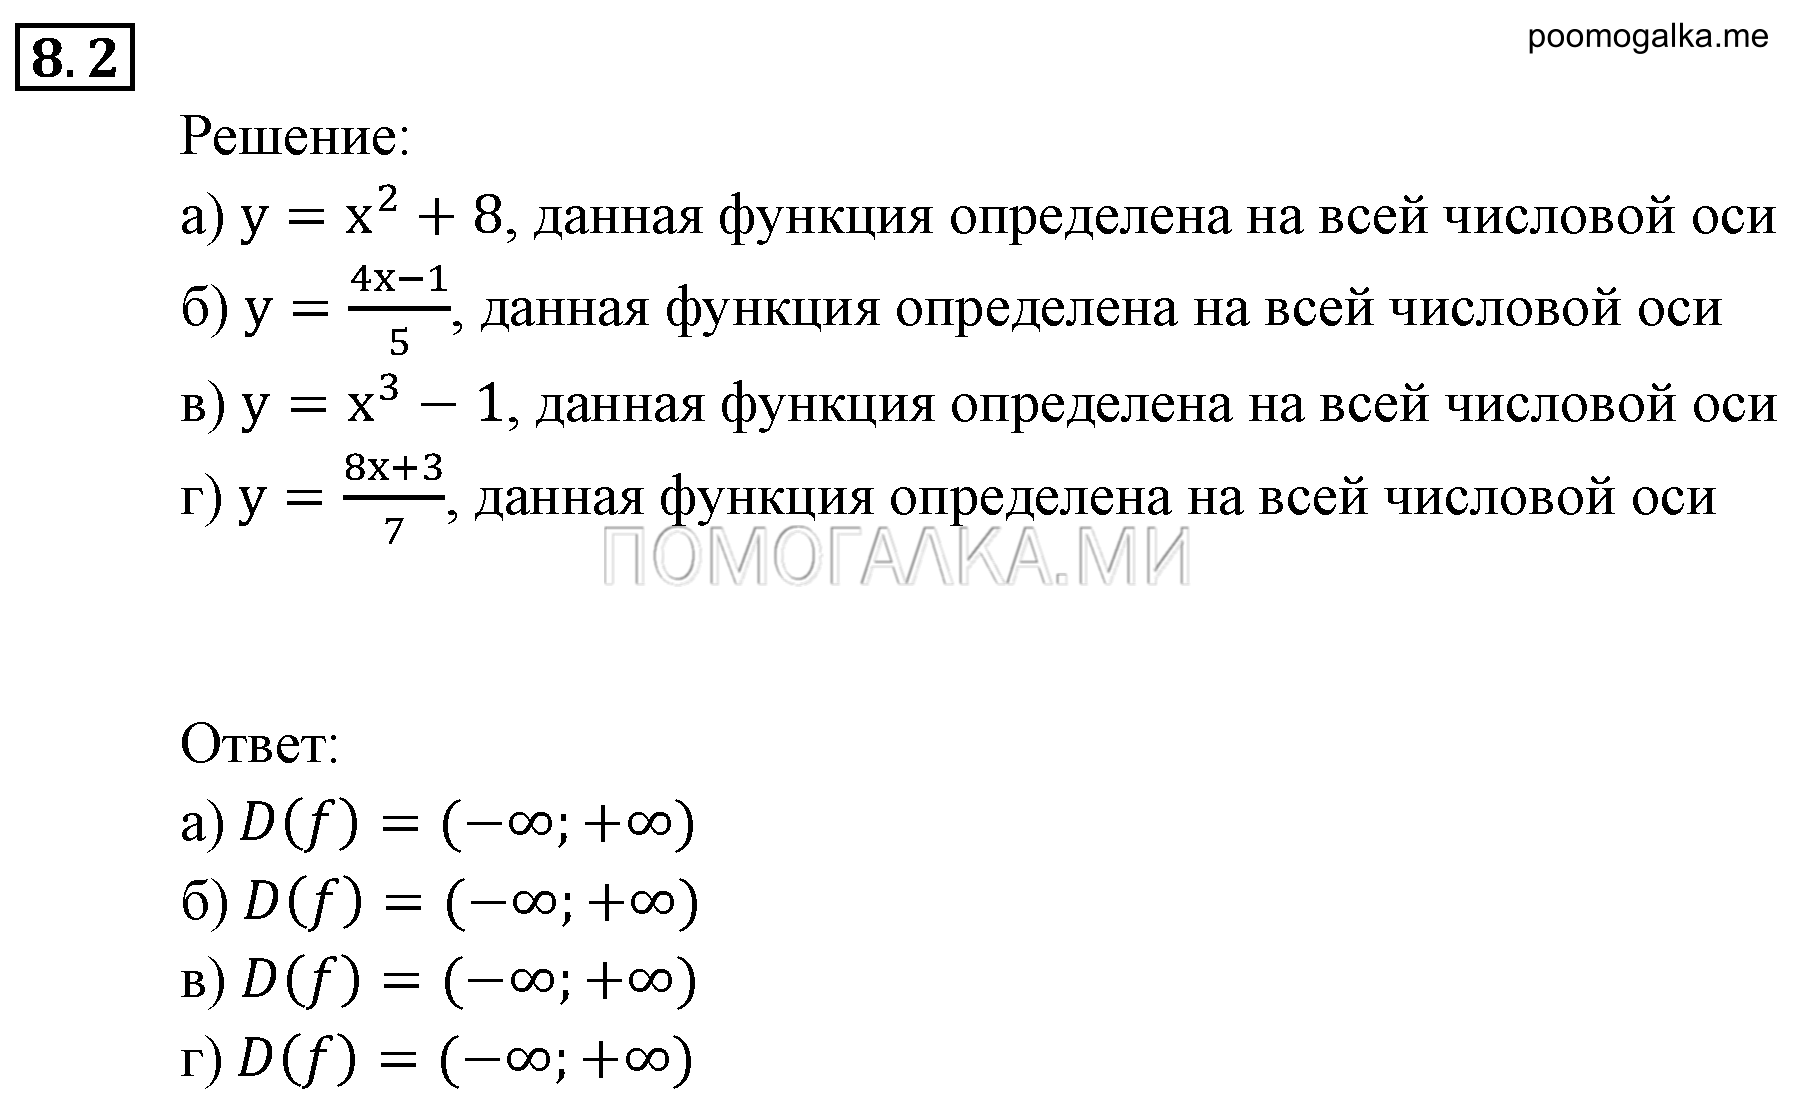 задача №8.2 алгебра 9 класс Мордкович